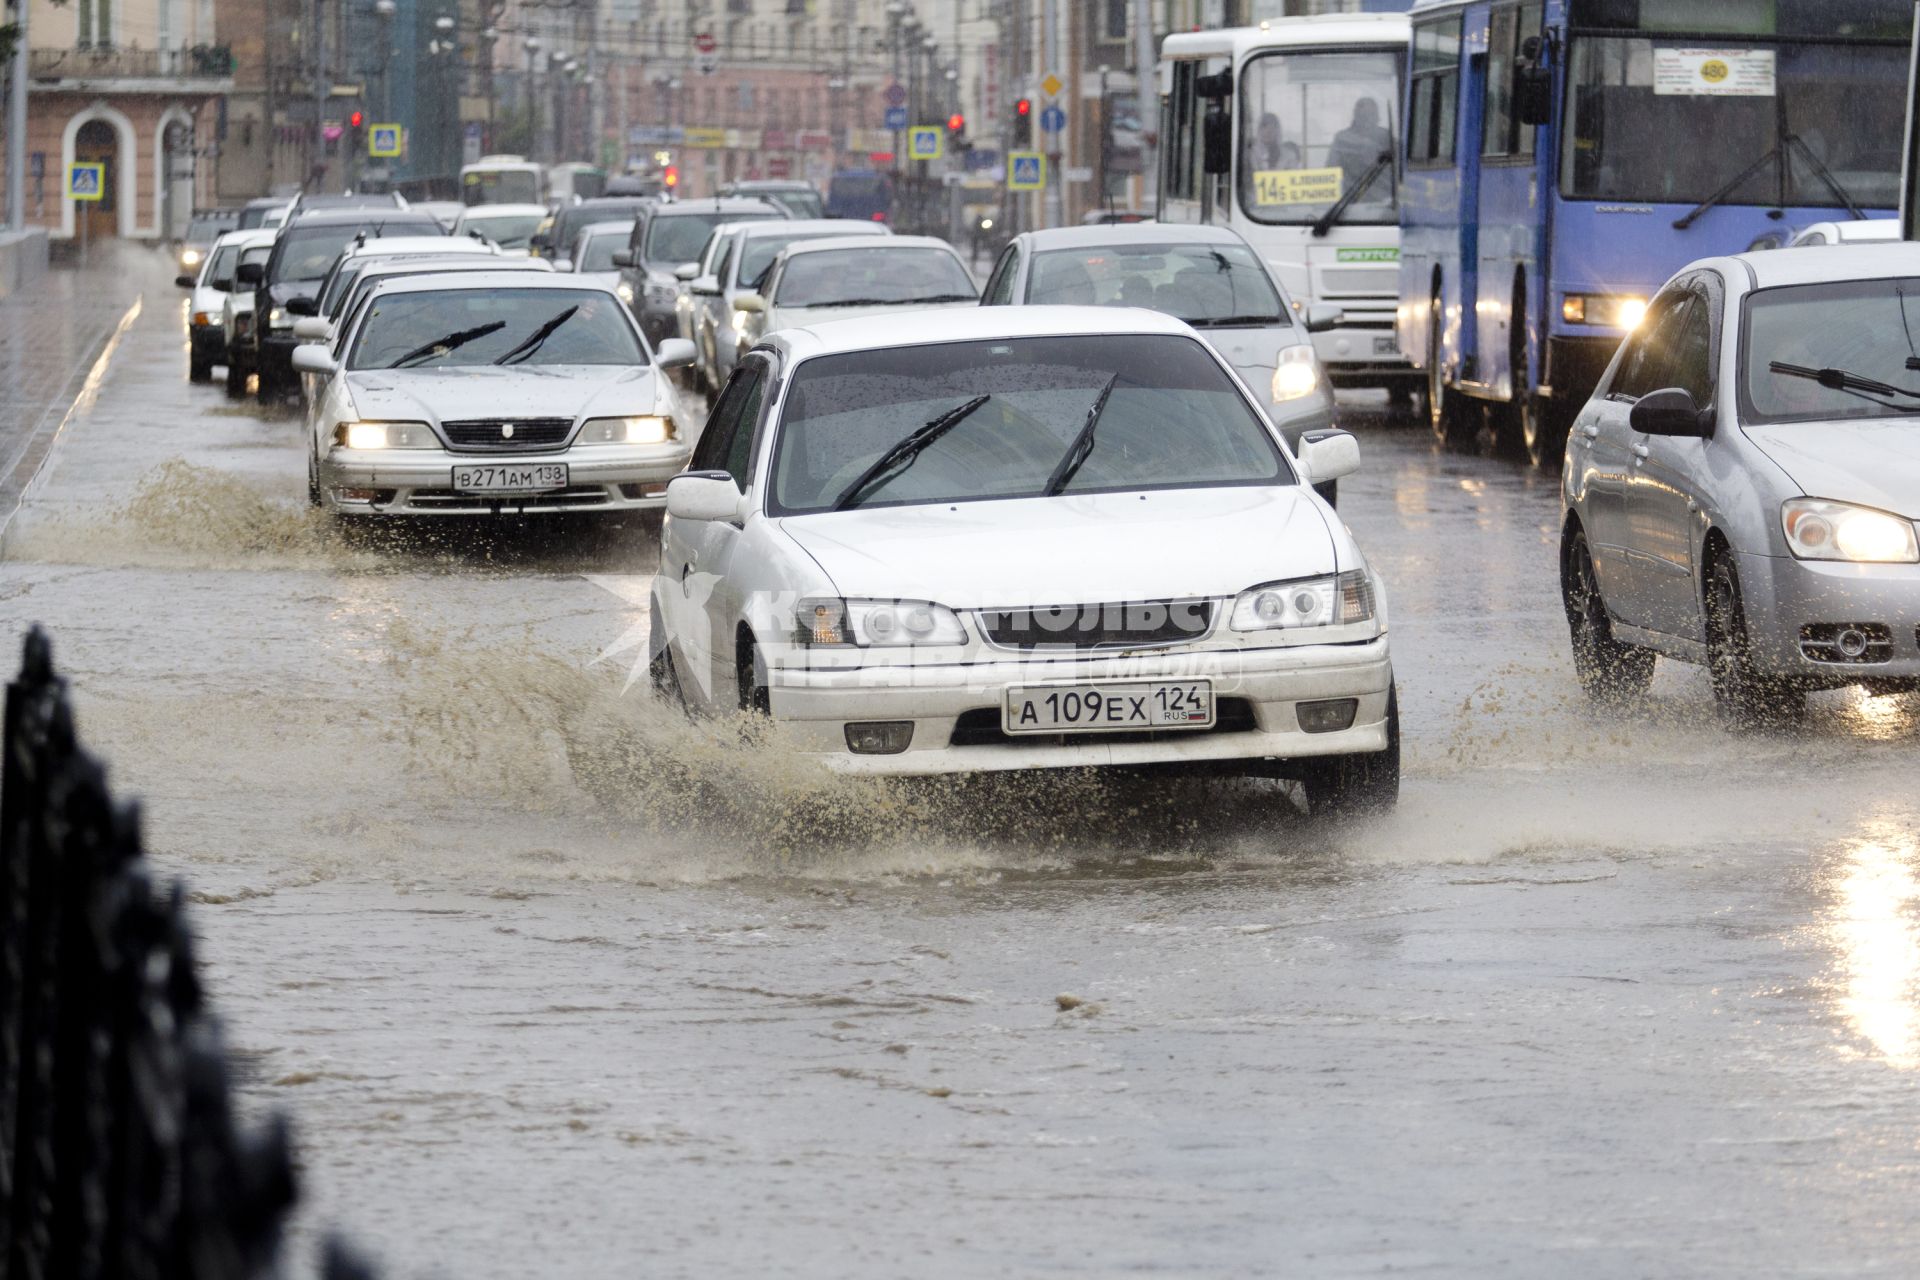 Иркутск. Автомобили на подтопленной проливным дождем улице.